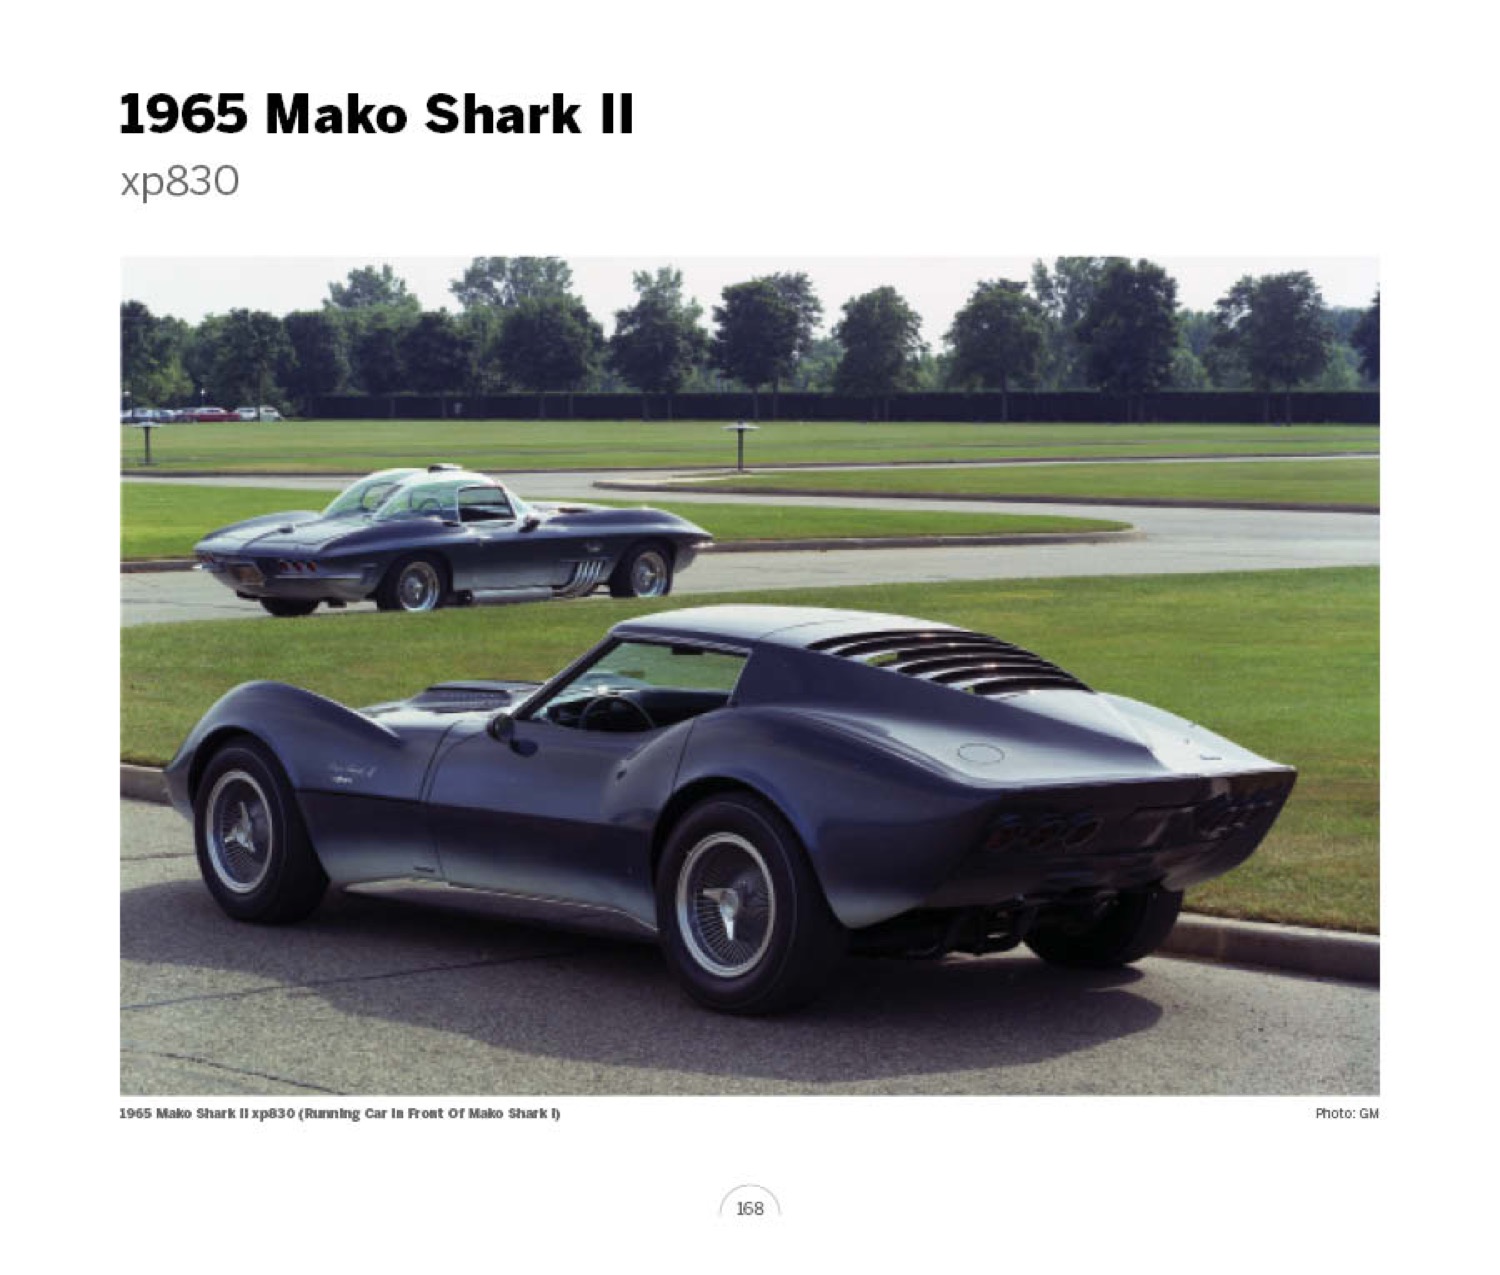 (19) 1965 Mako Shark II xp830 LoRez.jpg